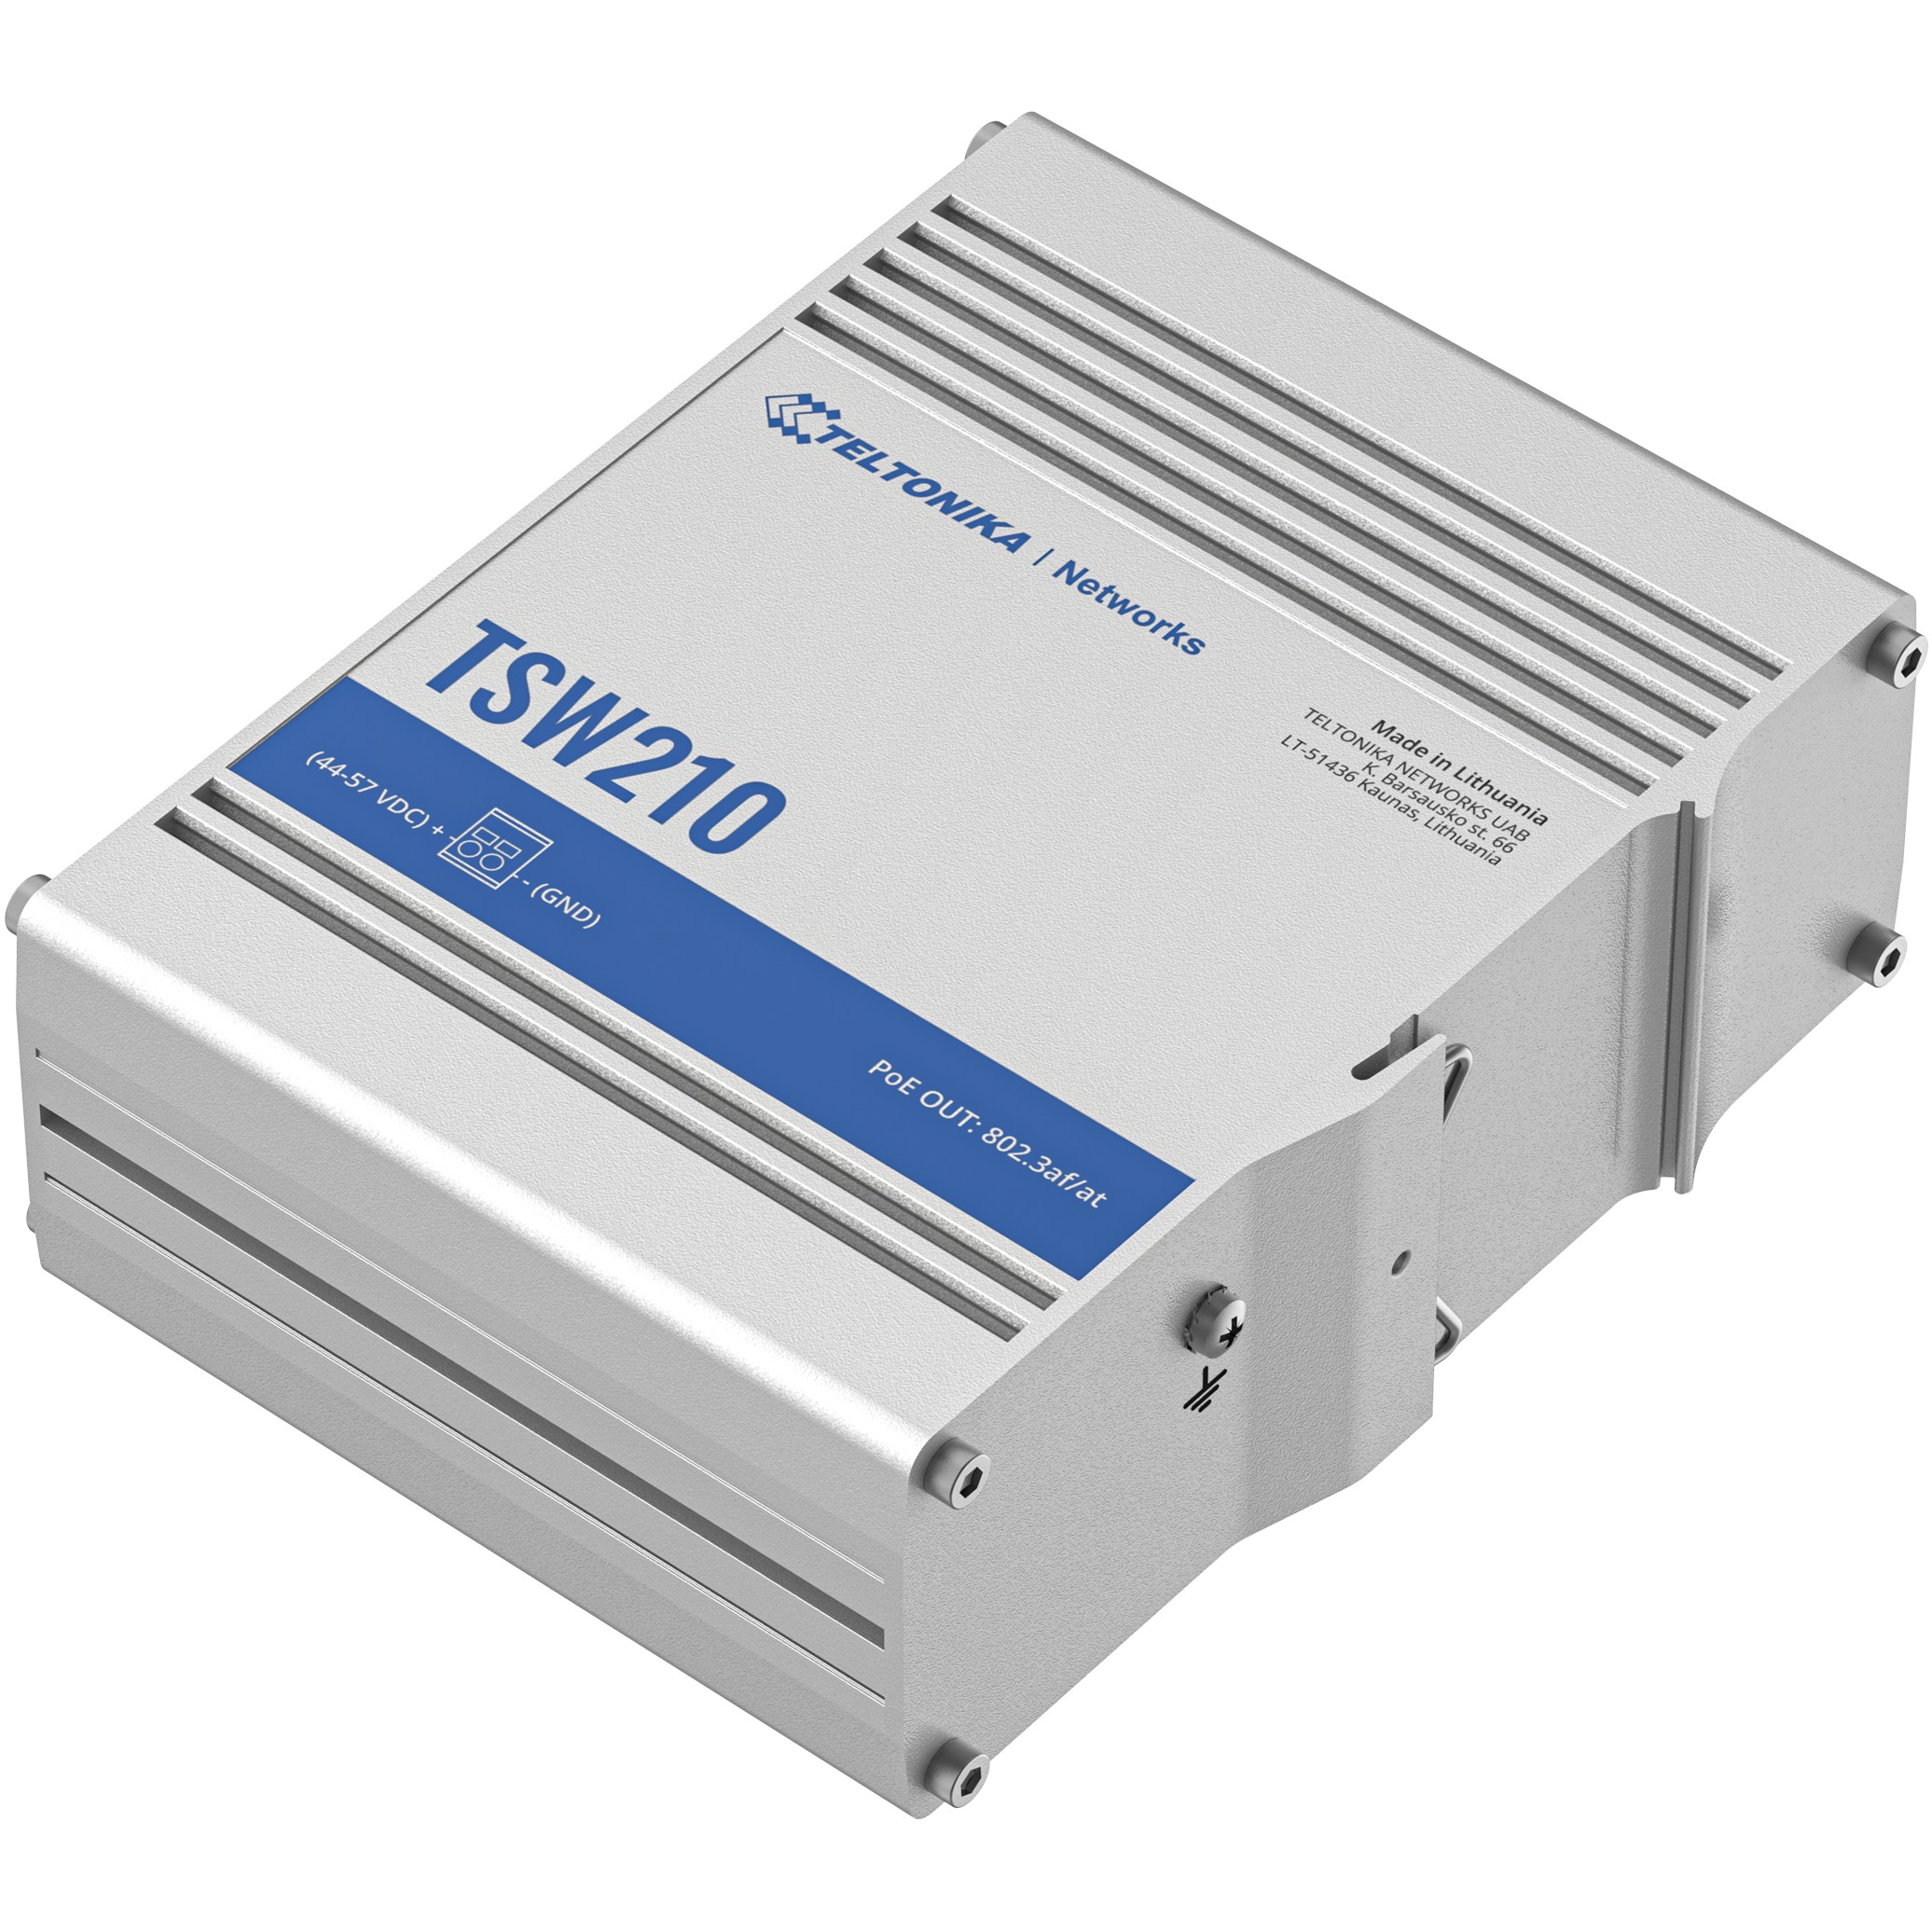 Teltonika TSW210000000, Switches, Teltonika TSW210  (BILD5)